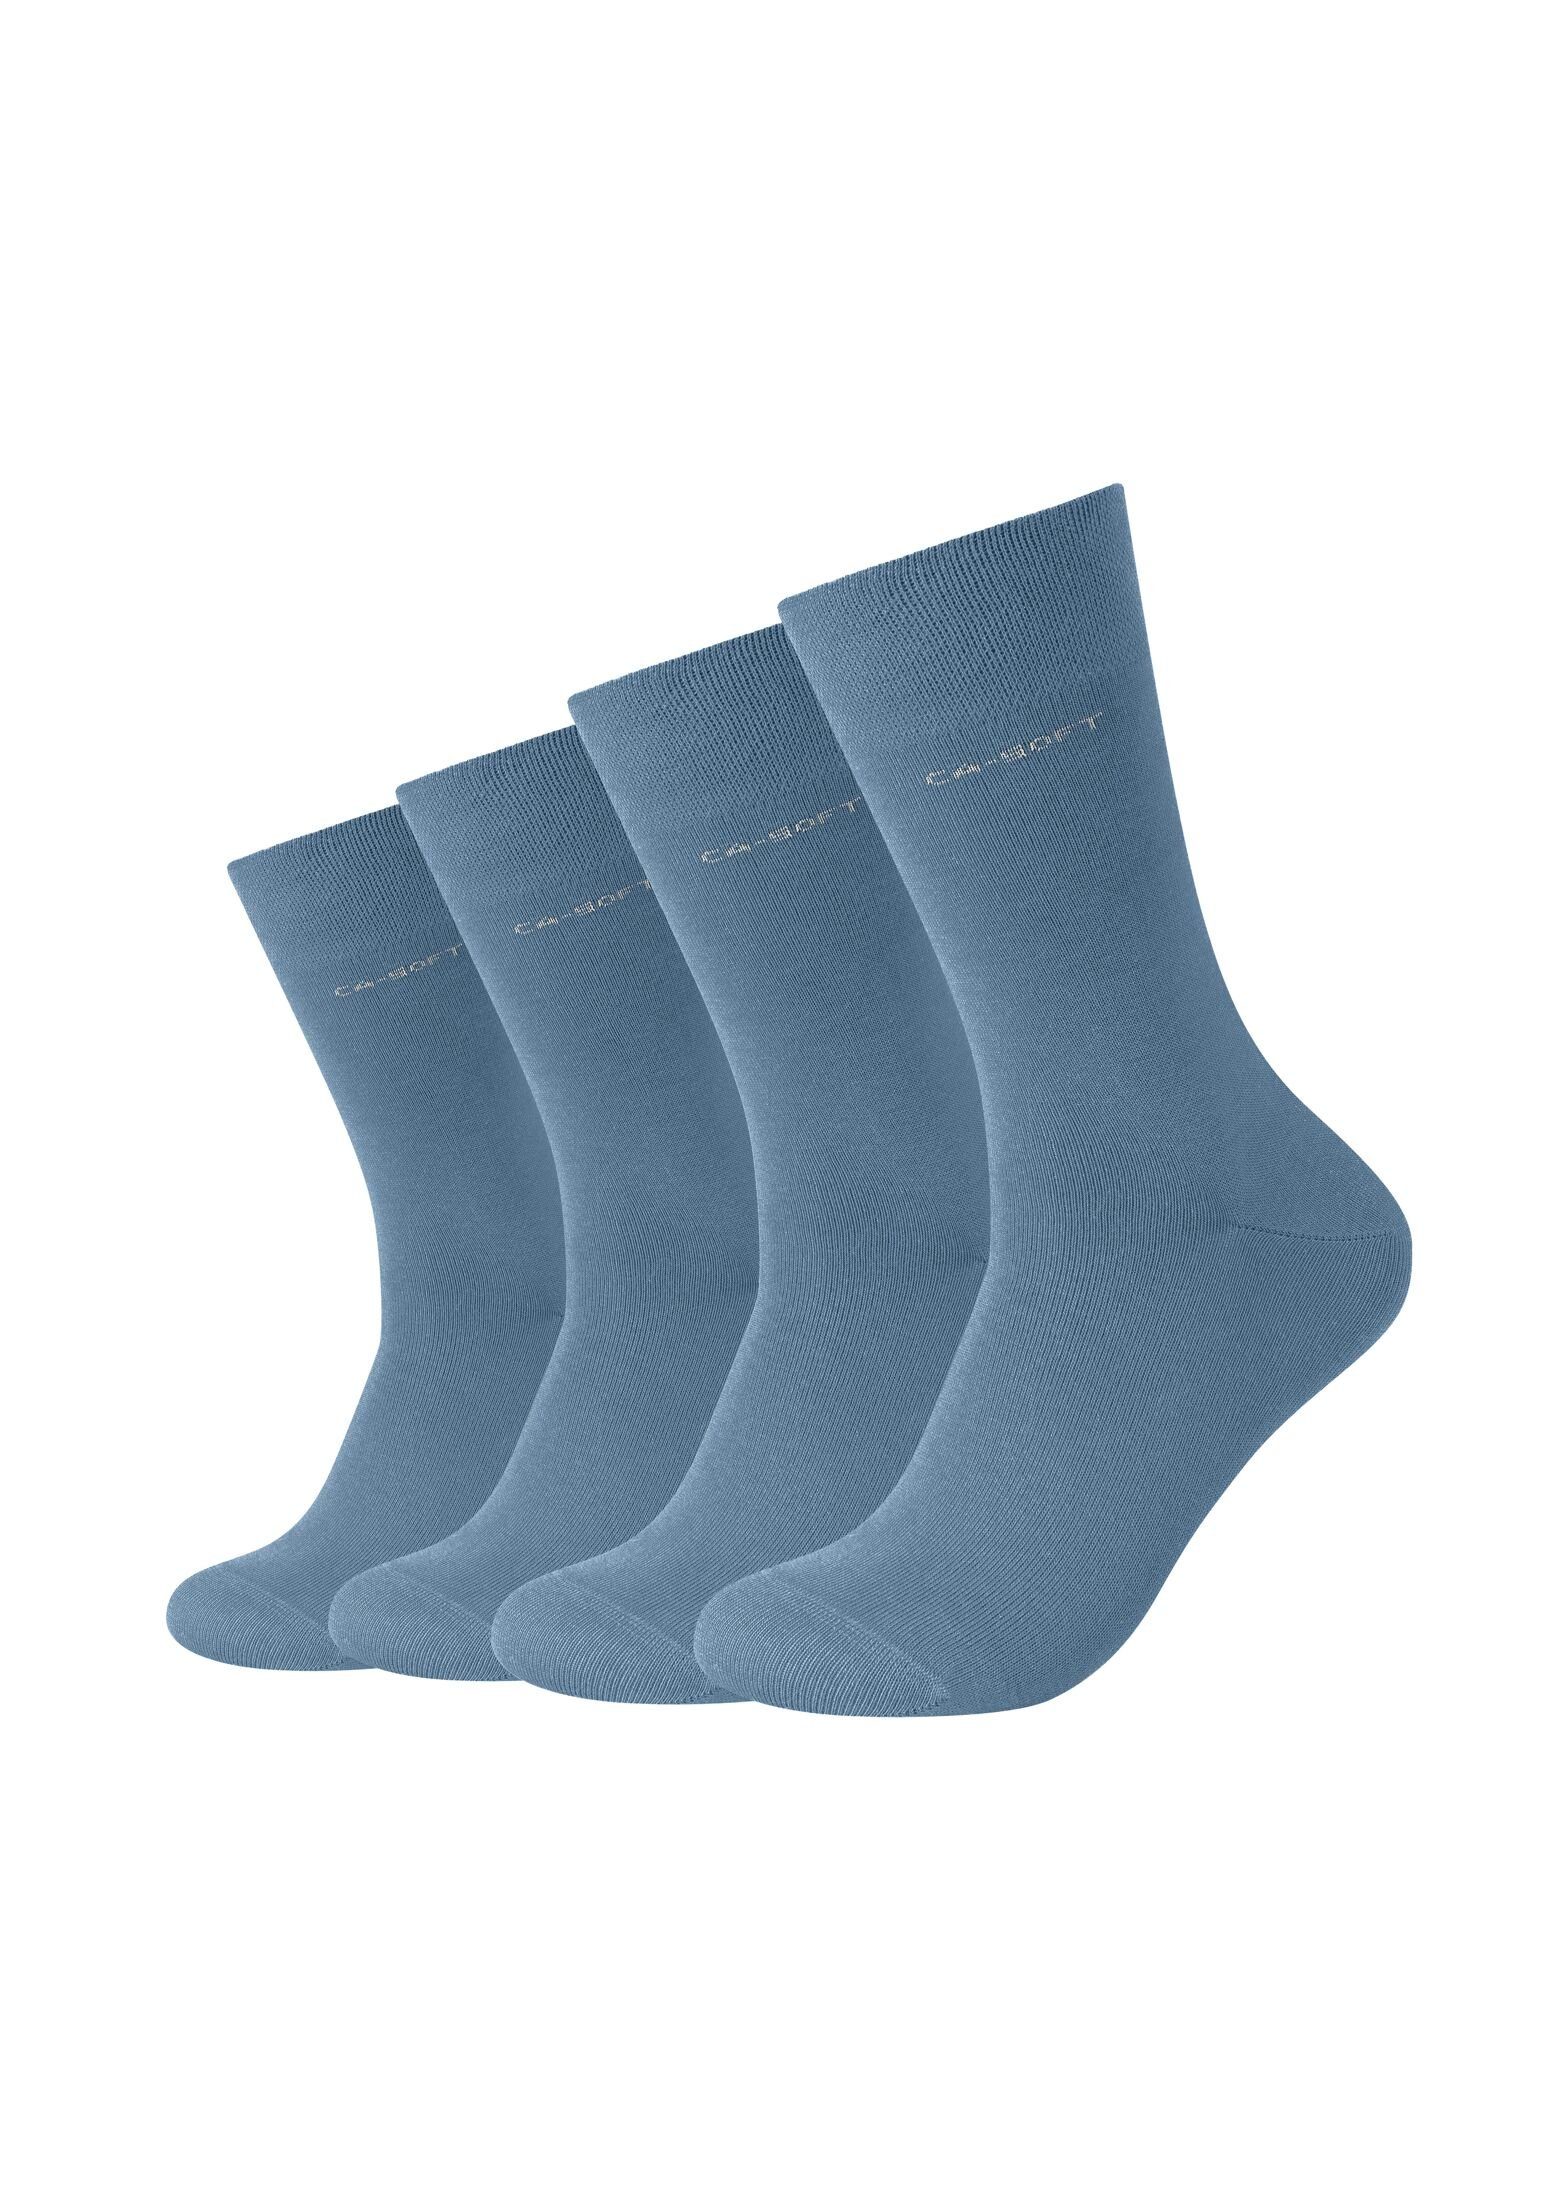 Camano Socken Socken für Damen und Herren Businesssocken Komfortbund Bequem captain's blue